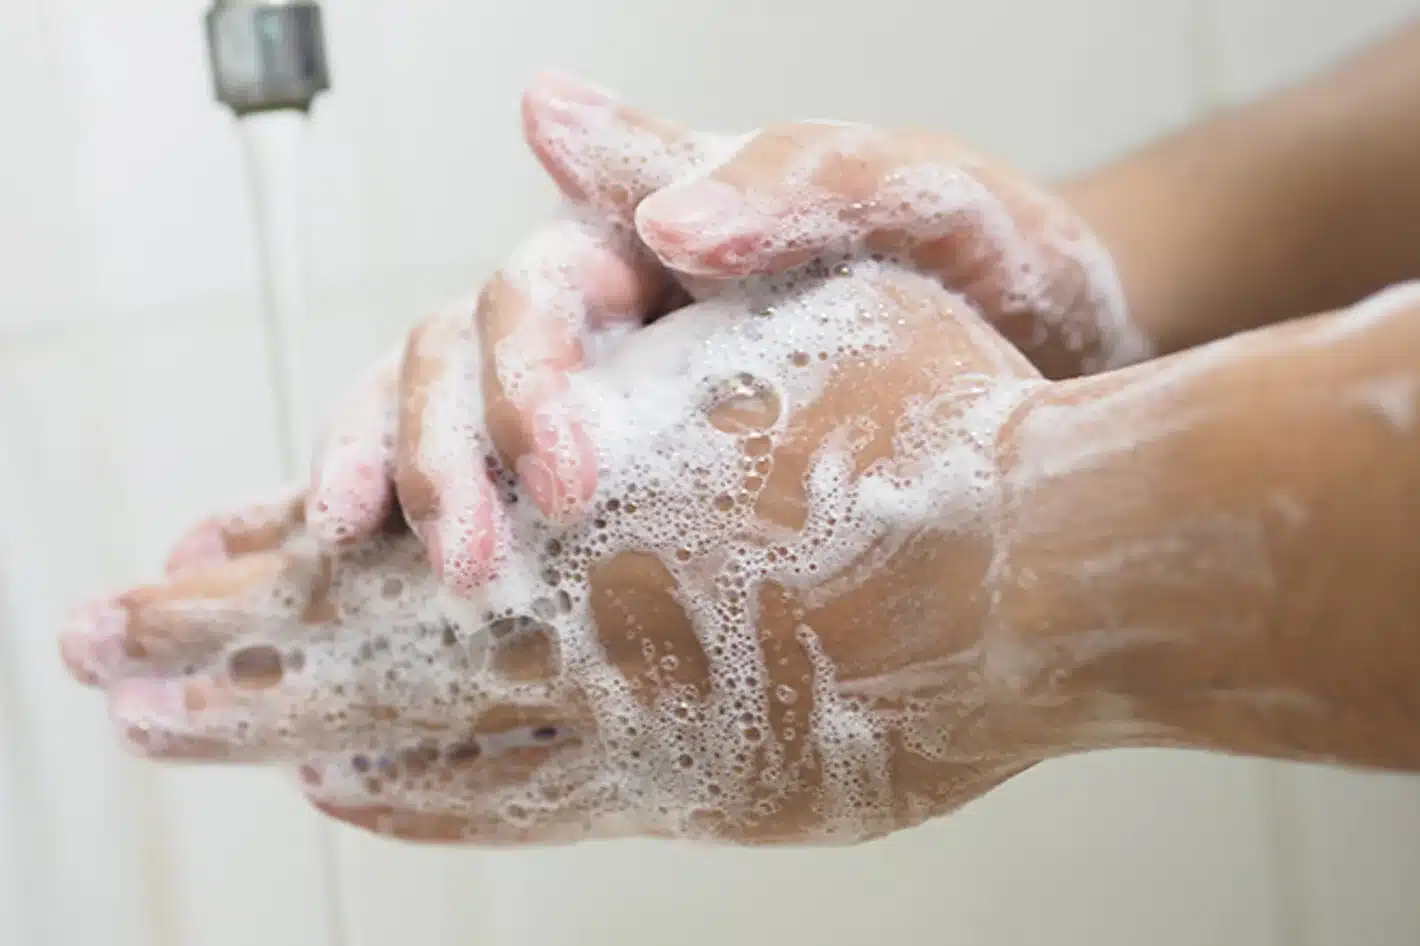 Una persona se frota las manos con agua y jabón